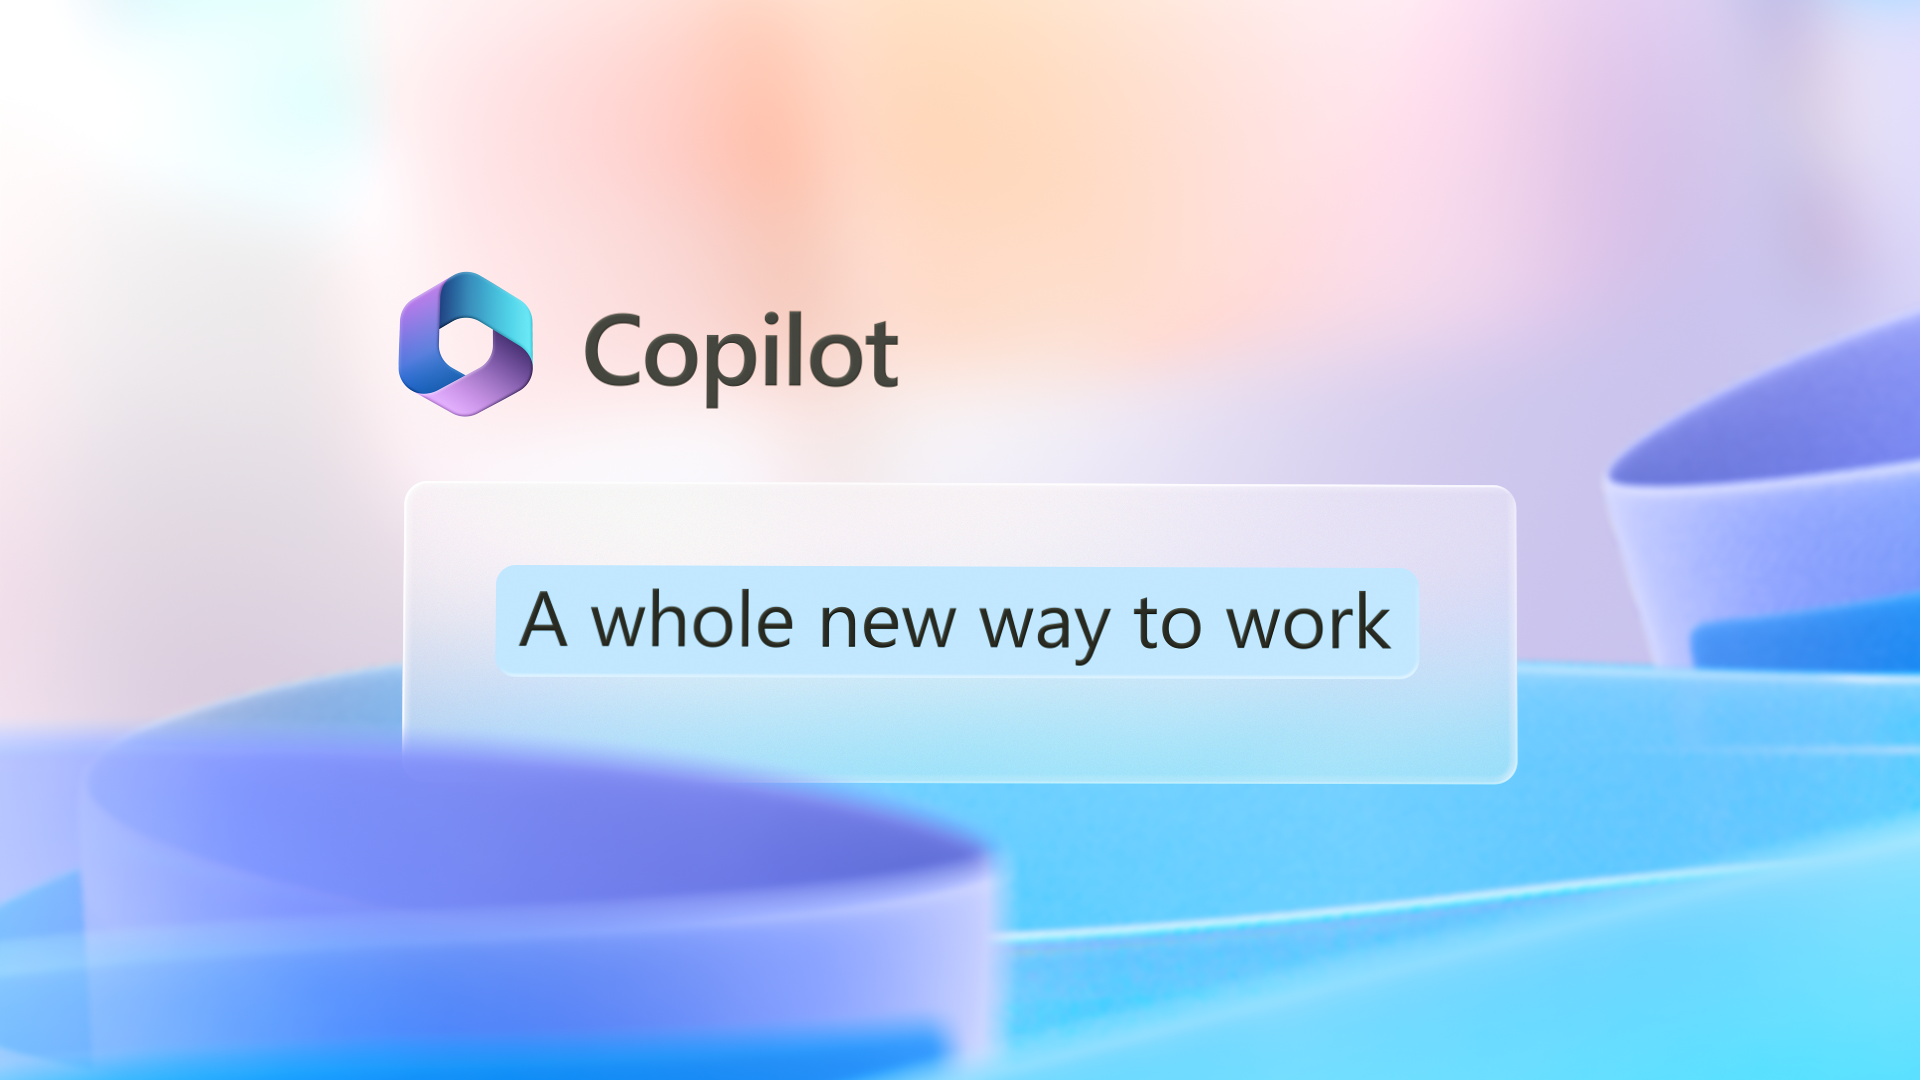 Grafický obrázok obsahuje logo Kopilot so slovami Úplne nový spôsob práce.